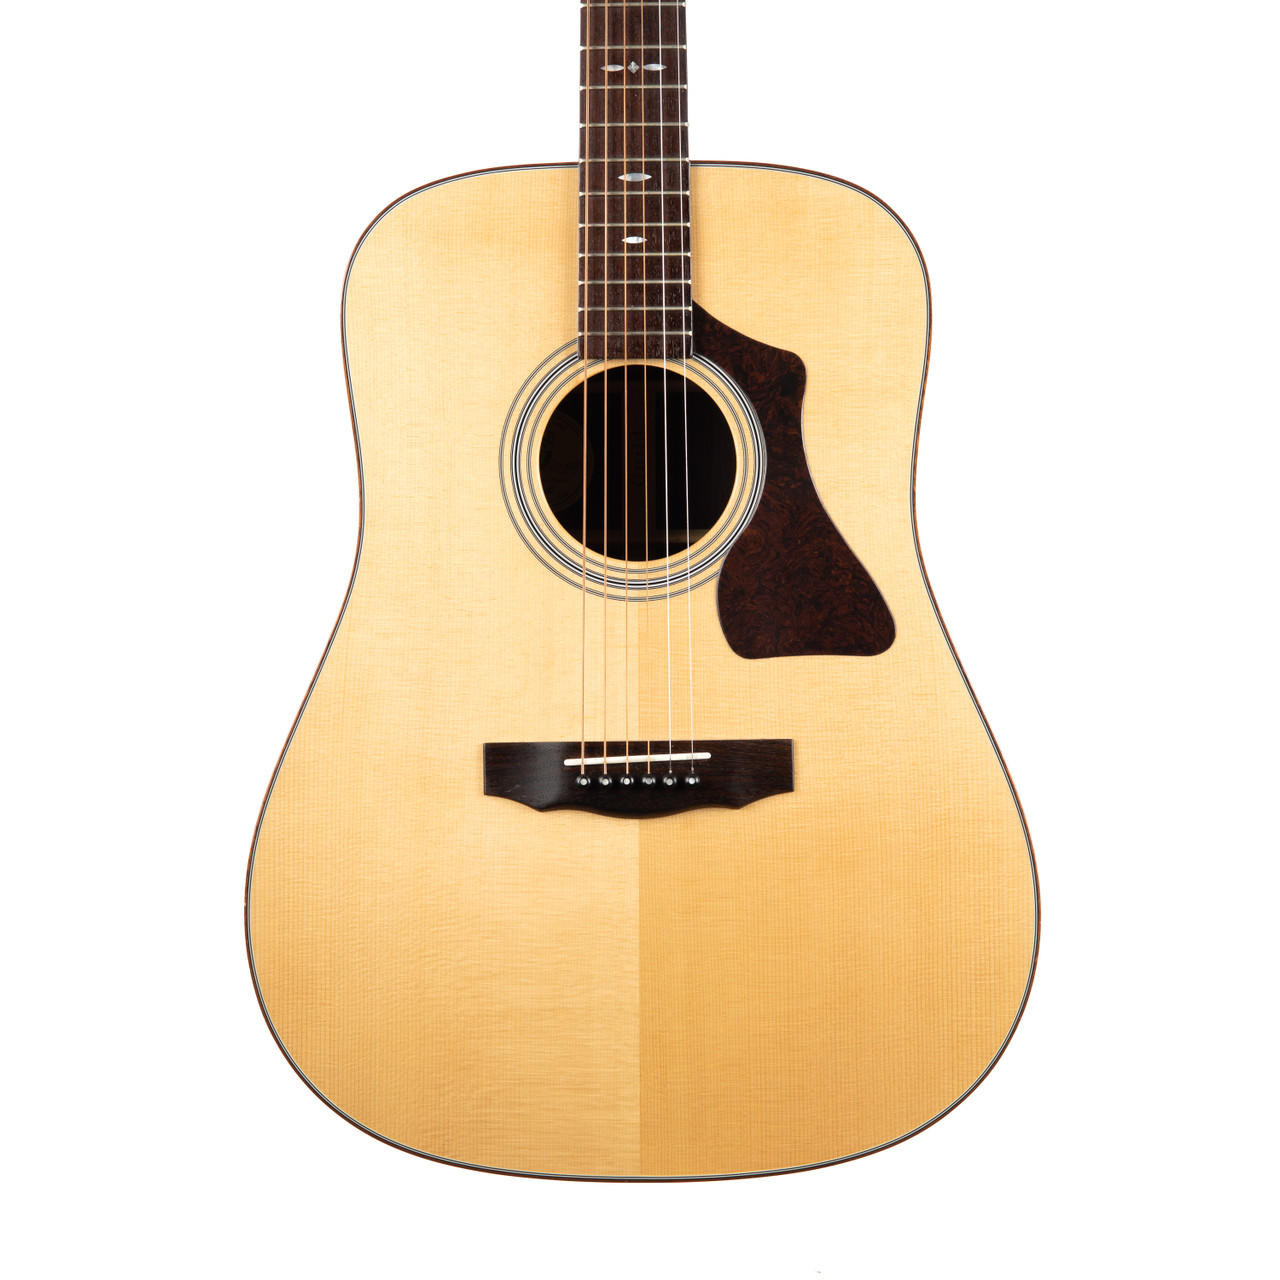 ギルドアコースティックギター GAD-50 - 楽器、器材